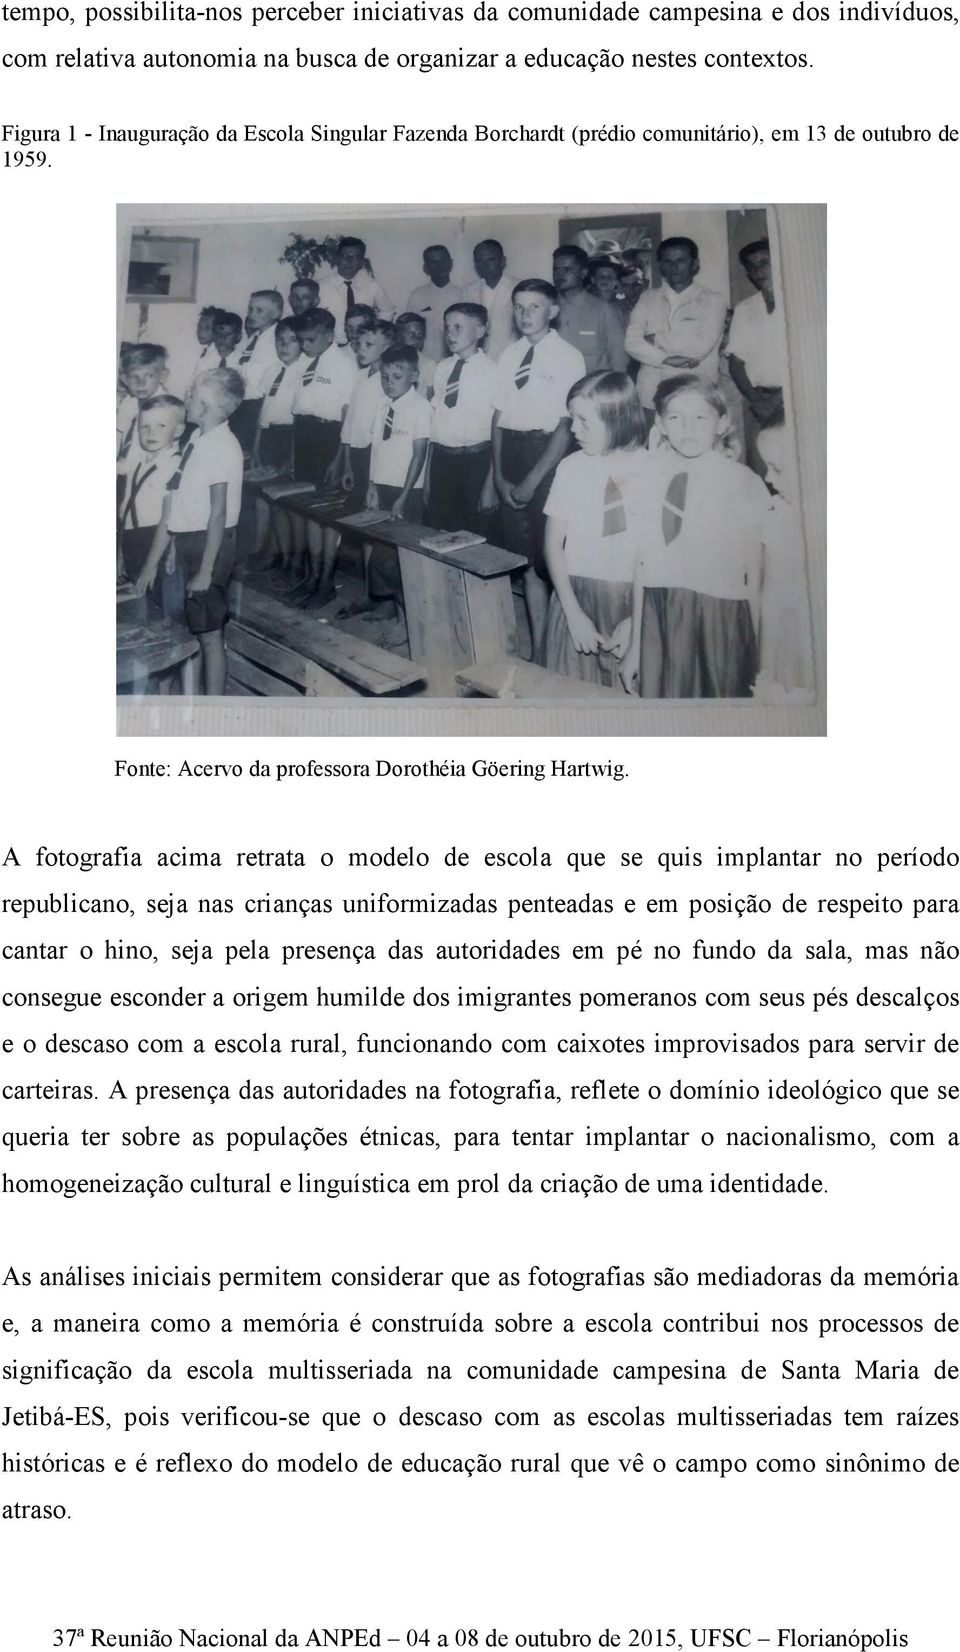 A fotografia acima retrata o modelo de escola que se quis implantar no período republicano, seja nas crianças uniformizadas penteadas e em posição de respeito para cantar o hino, seja pela presença